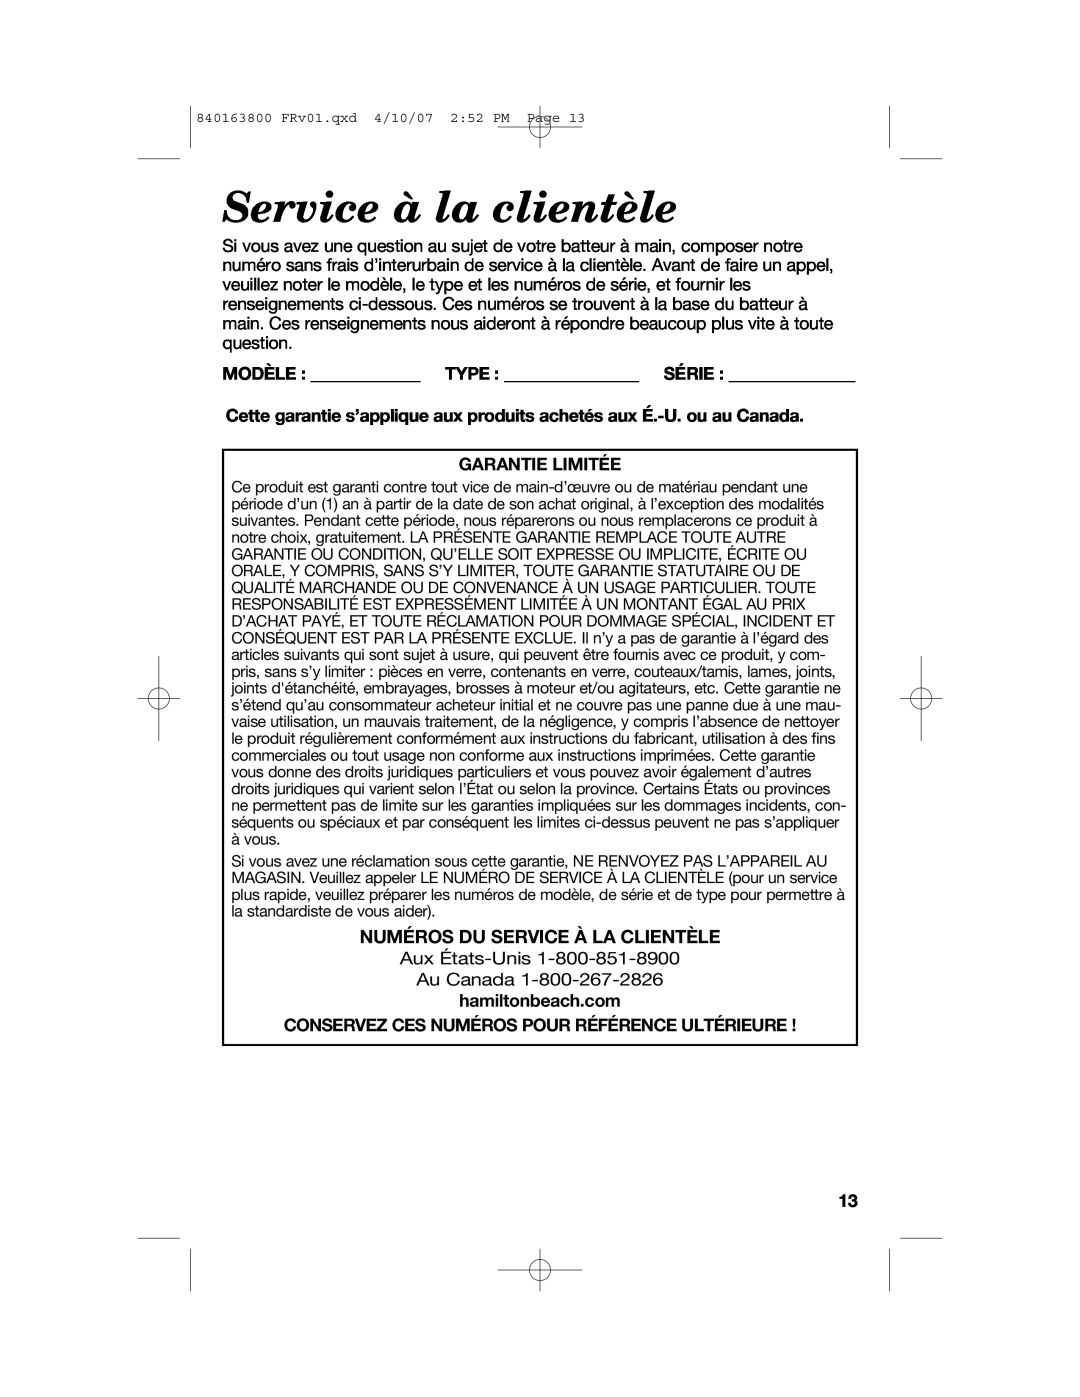 Hamilton Beach 62650 manual Service à la clientèle, Numéros Du Service À La Clientèle, Modèle Type Série, Garantie Limitée 